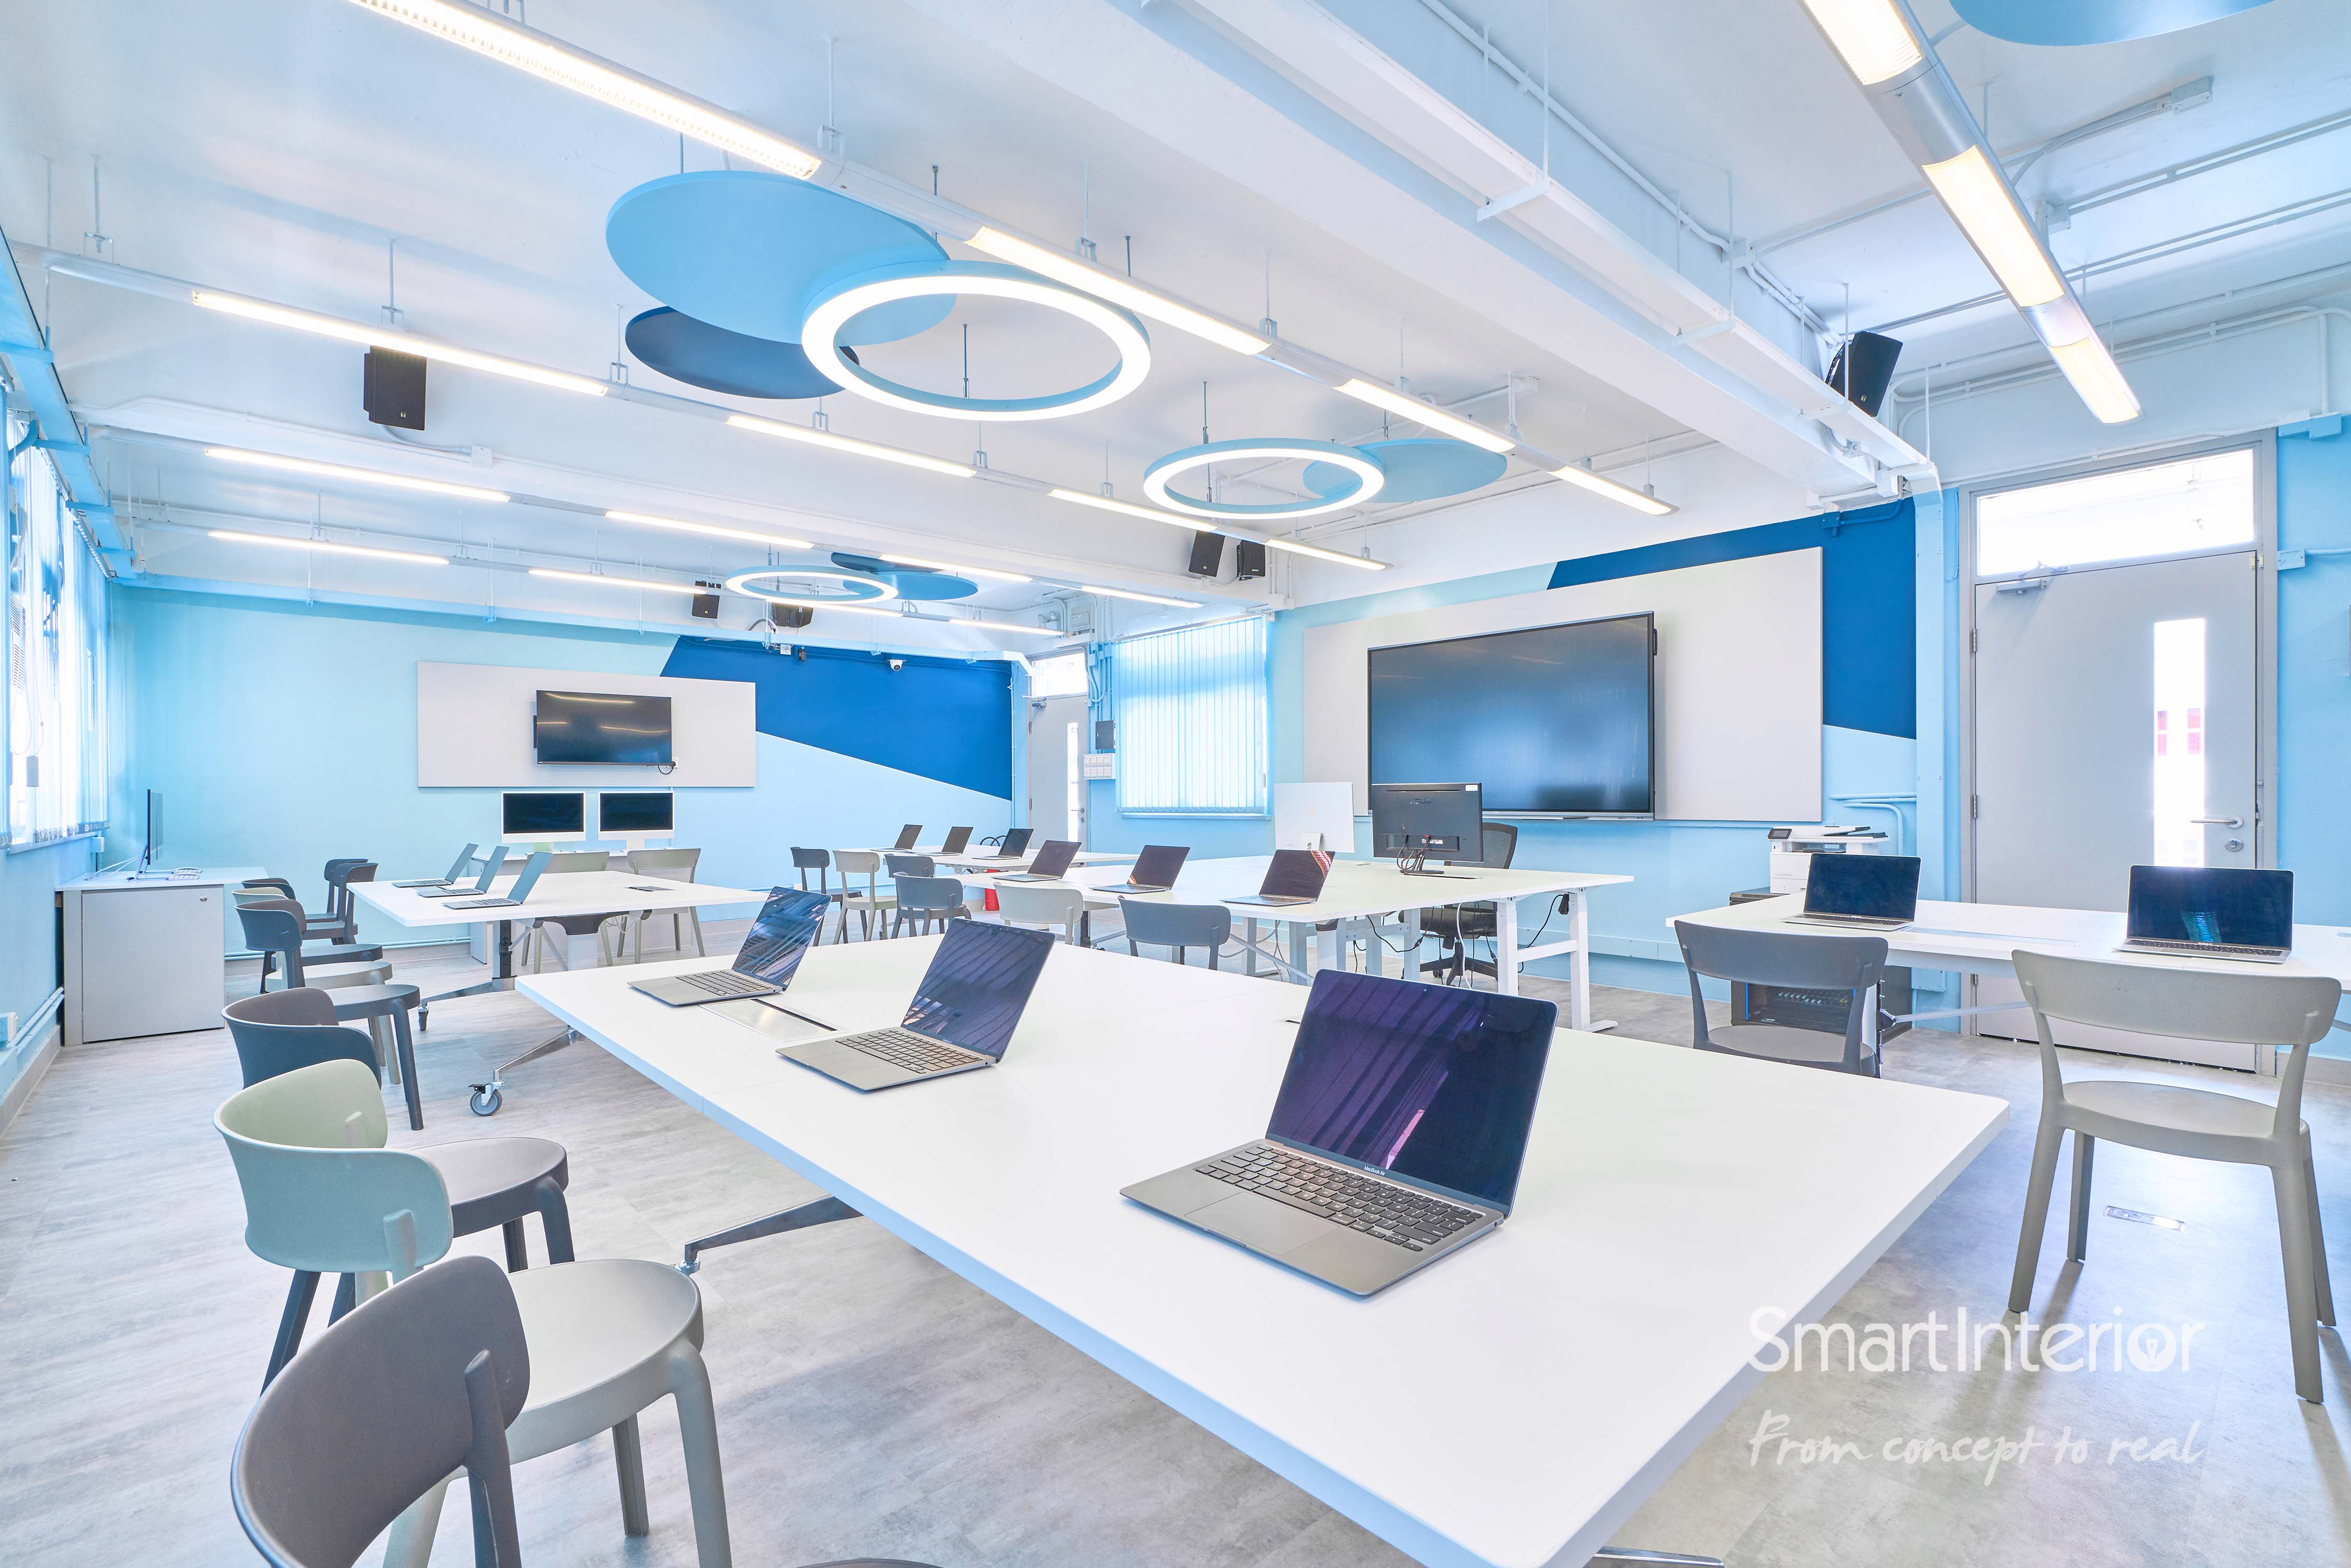 Josephine Kung - Smart Interior Limited - School Innovation Lab